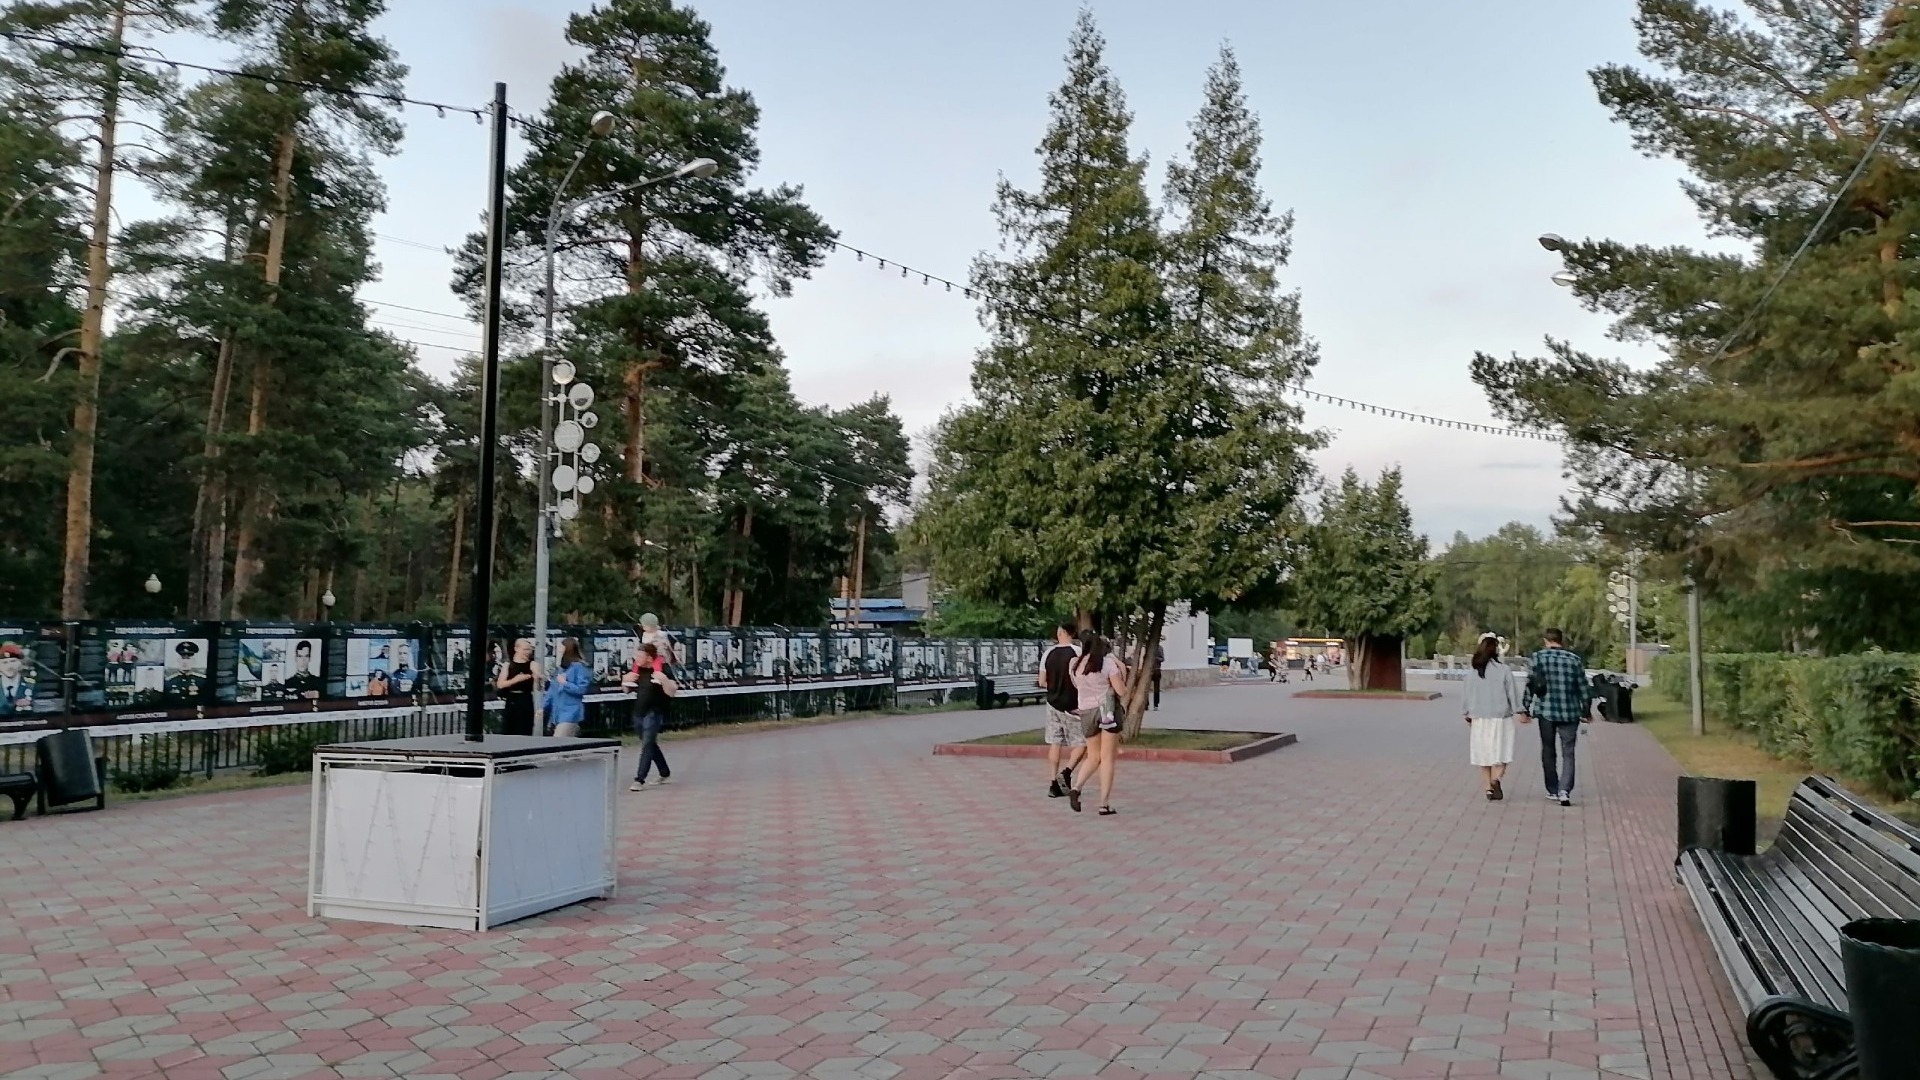 Найден самый экономичный способ отдыха в Челябинске: с сосновым лесом и водоемами